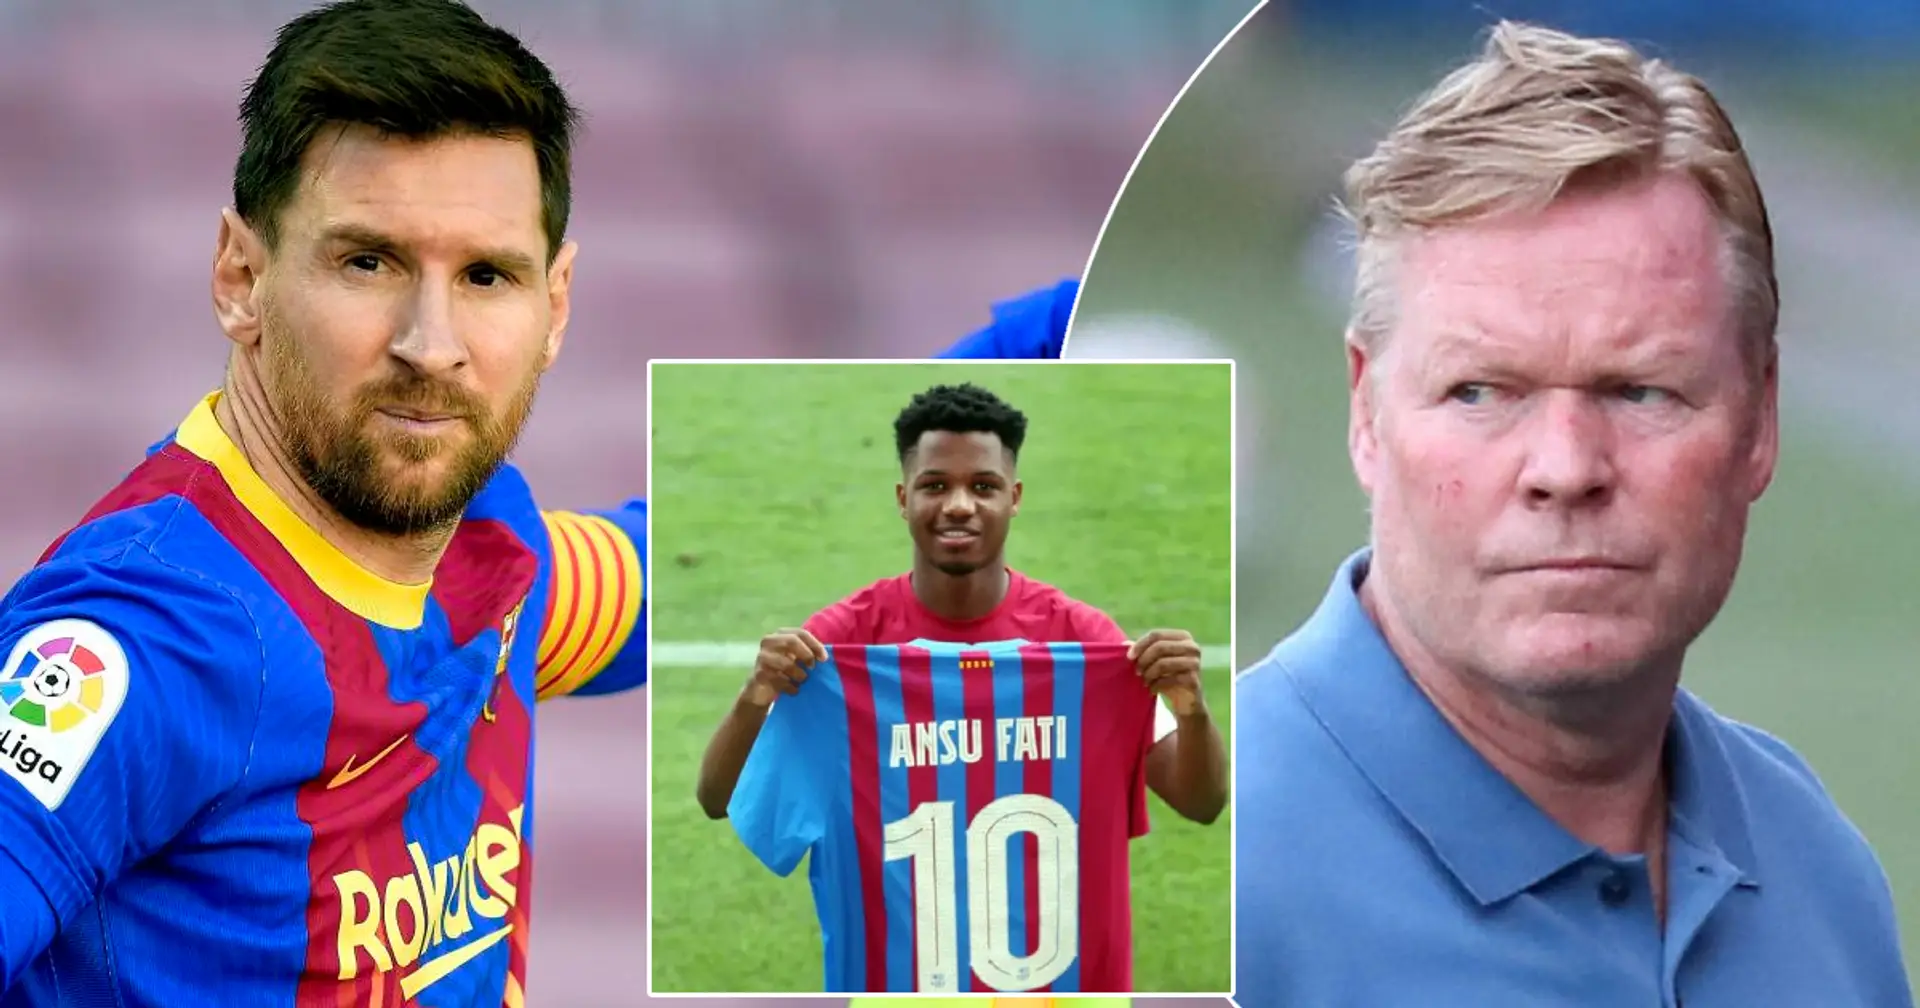 Le XI annoncé sans Leo Messi du Barça à partir de 2020 – comment il se compare à l'équipe actuelle